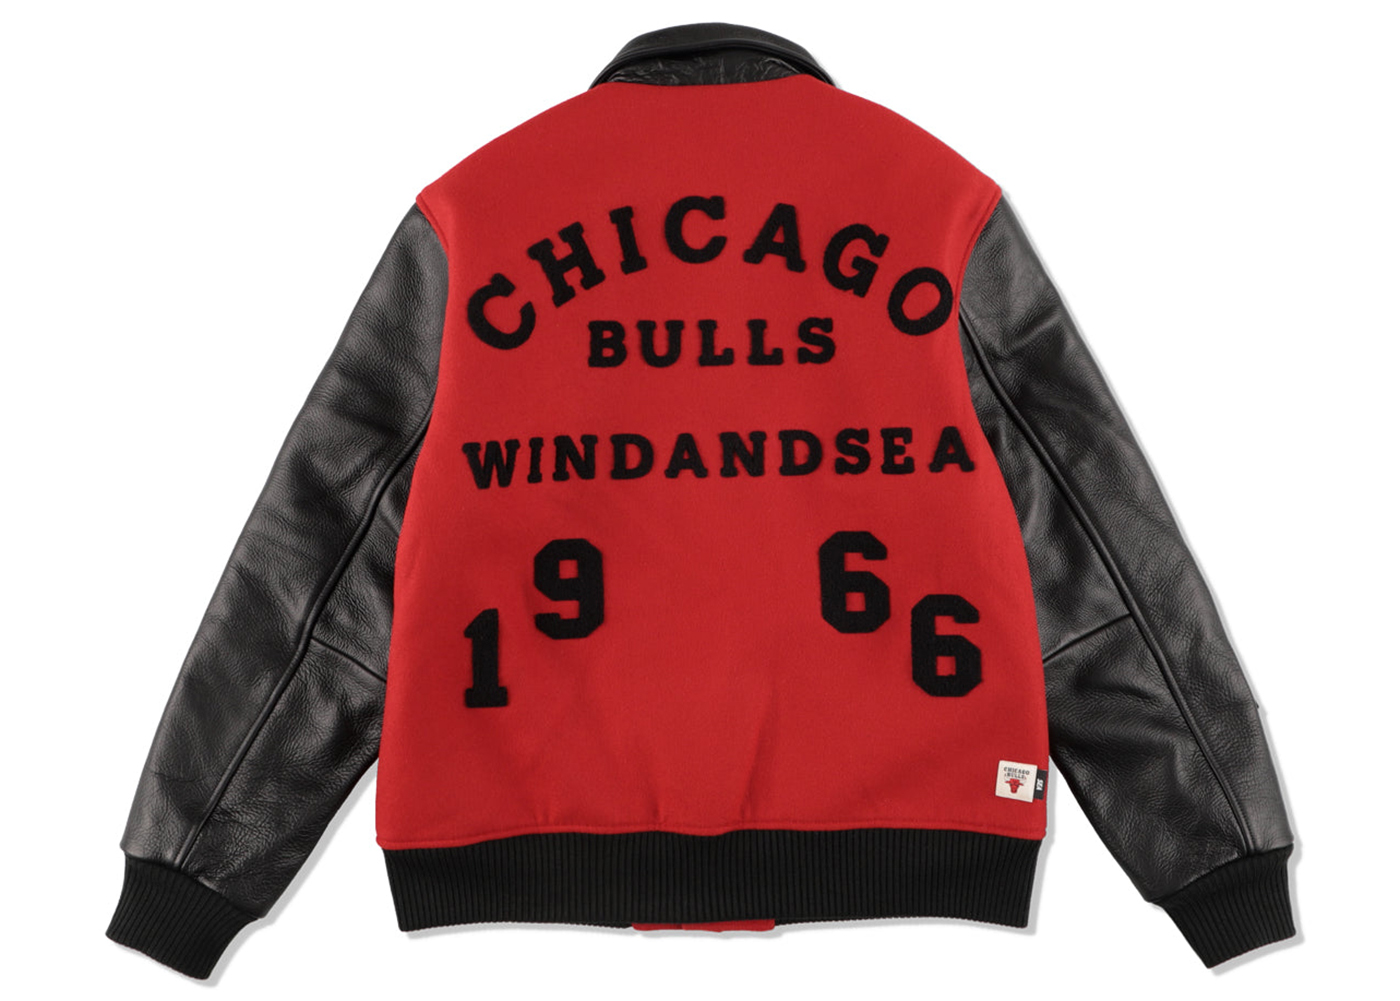 Wind and Sea NBA Leather Melton Jacket Jacket Chicago Bulls Men's